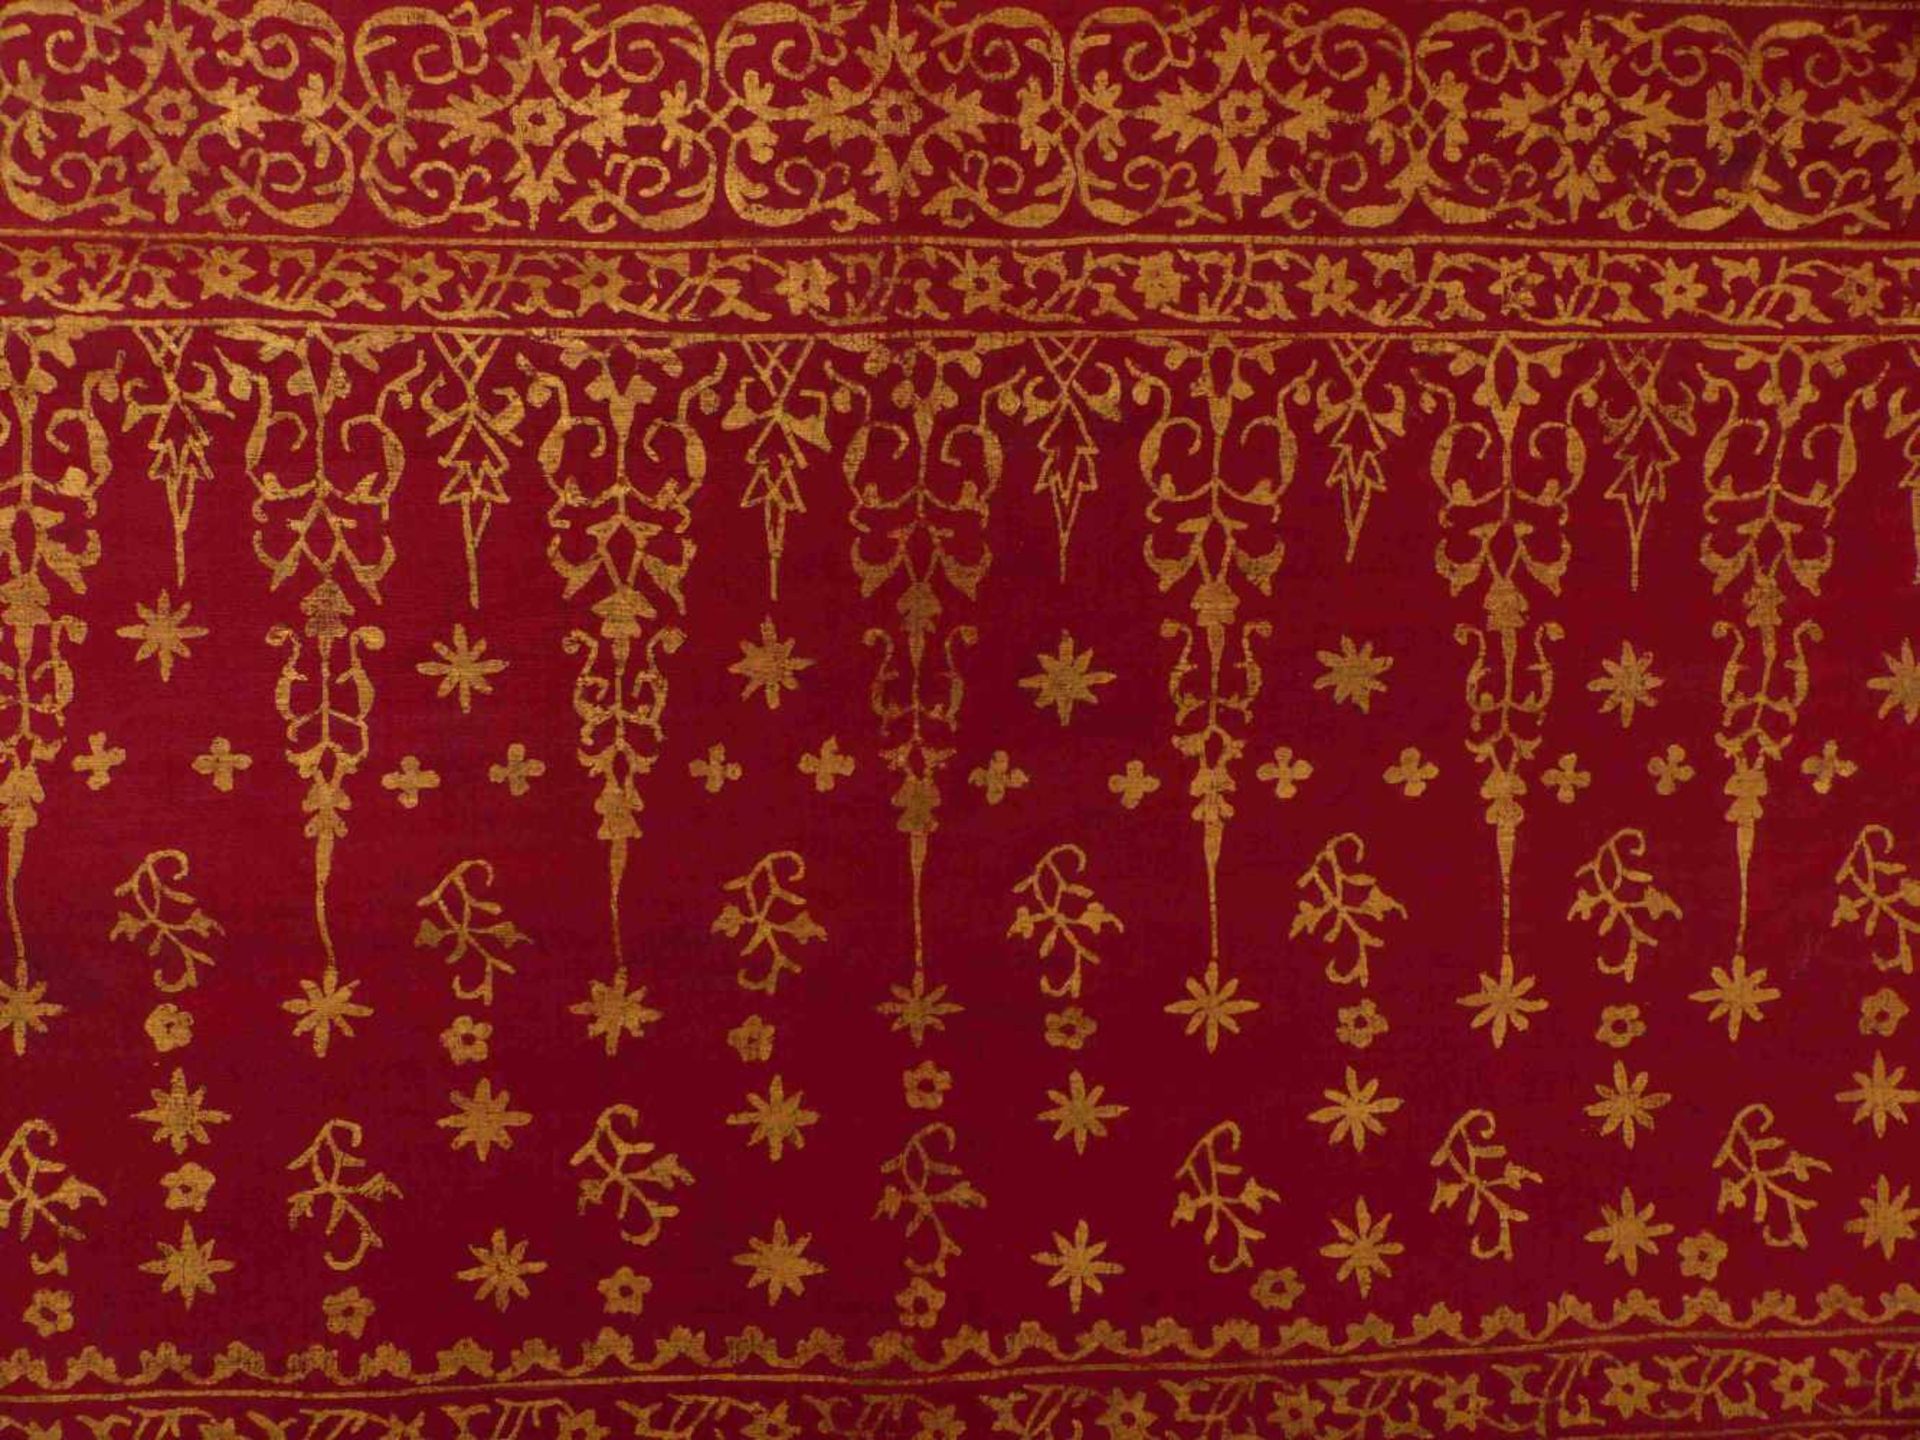 GebetstuchOman, wohl 19. Jh.Rechteckform mit floraler Goldmalerei auf rotem Grund. 85 x 198 cm. -